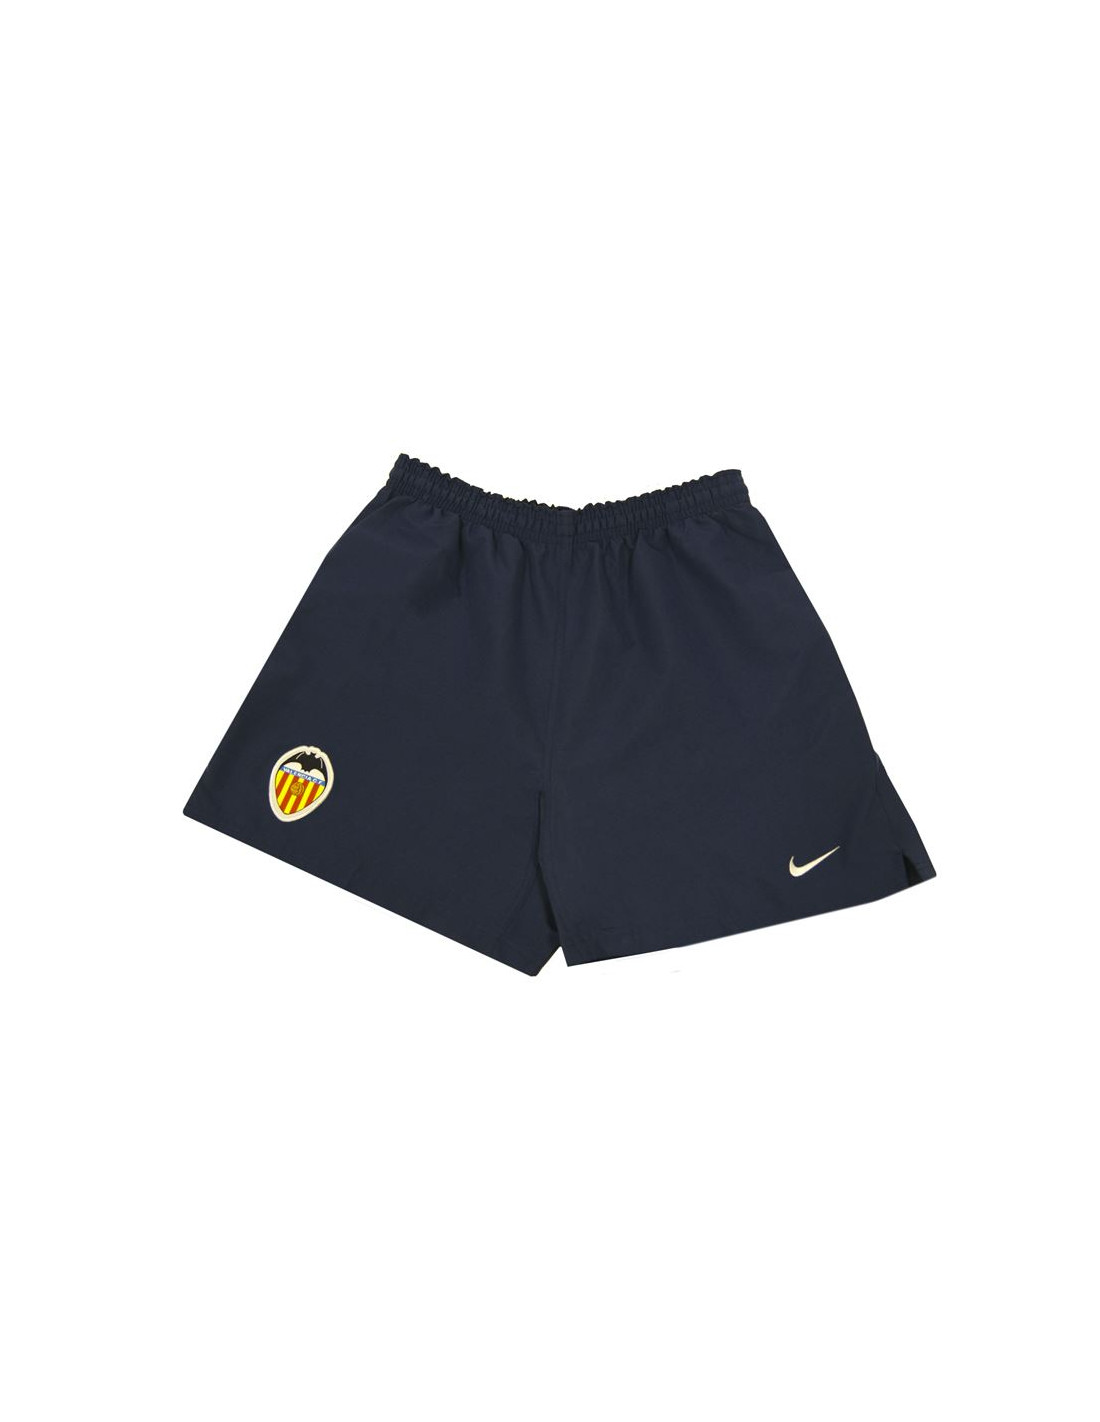 Pantalones cortos de fútbol nike azul marino